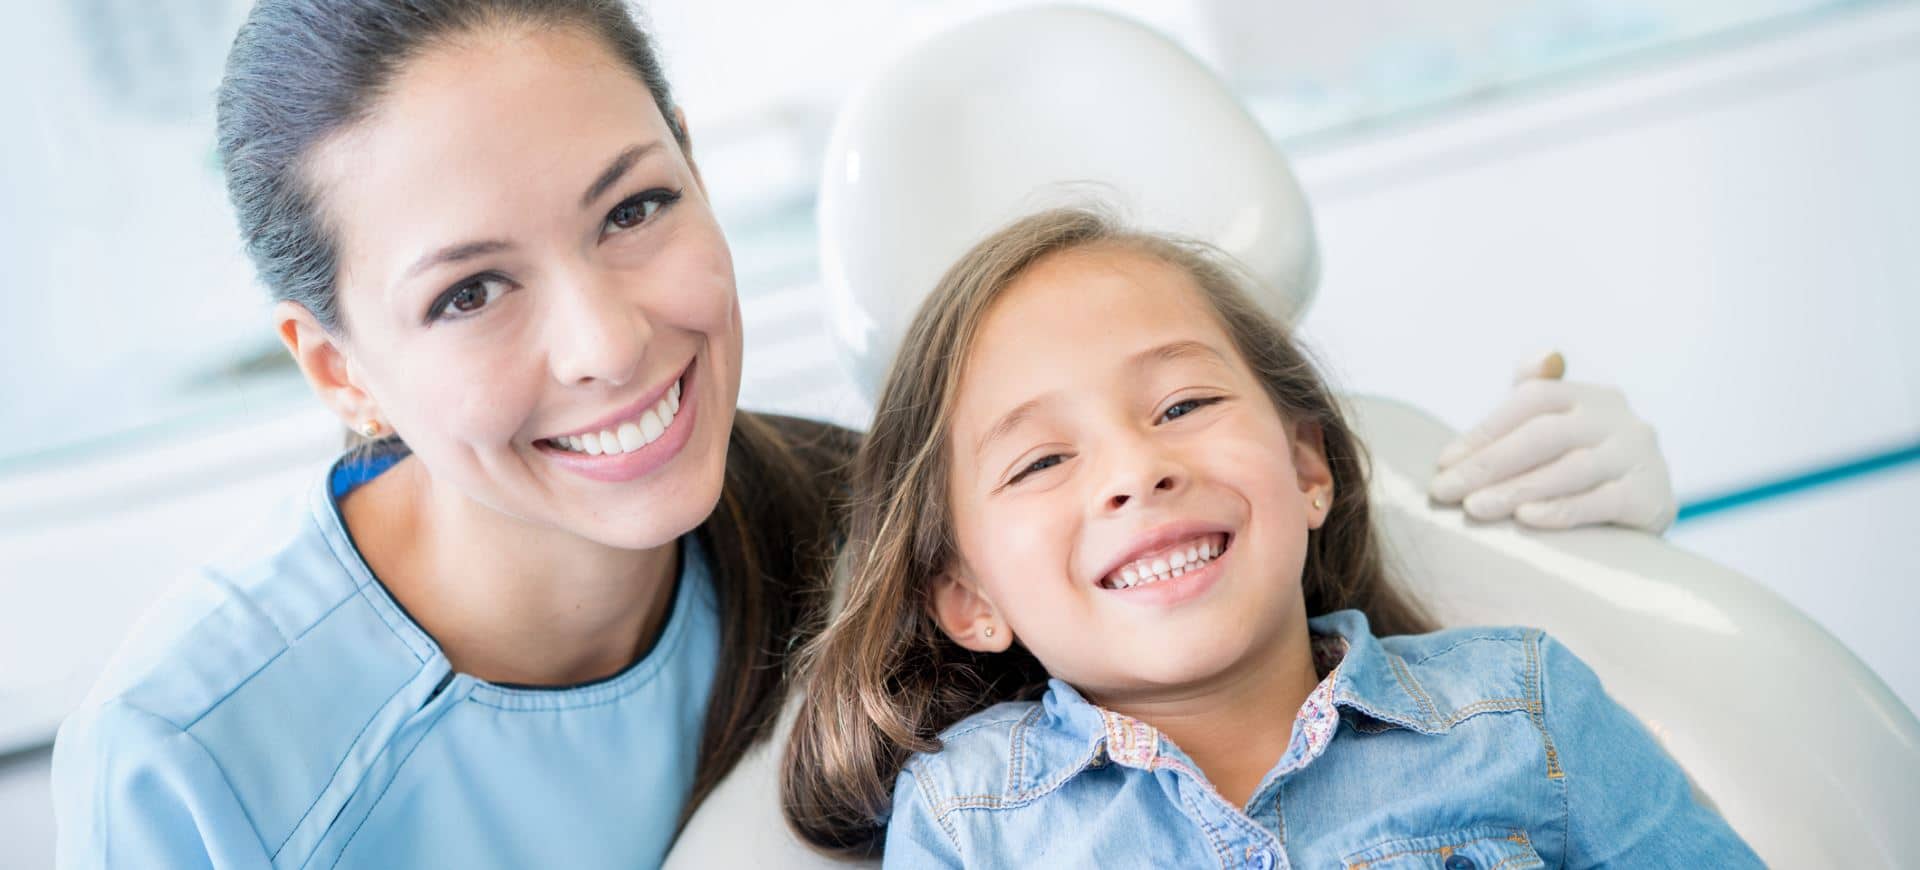 Детская стоматология отзывы о врачах. Стоматология дети. Ребенок у стоматолога. Детская улыбка стоматология. Ребенок улыбается.